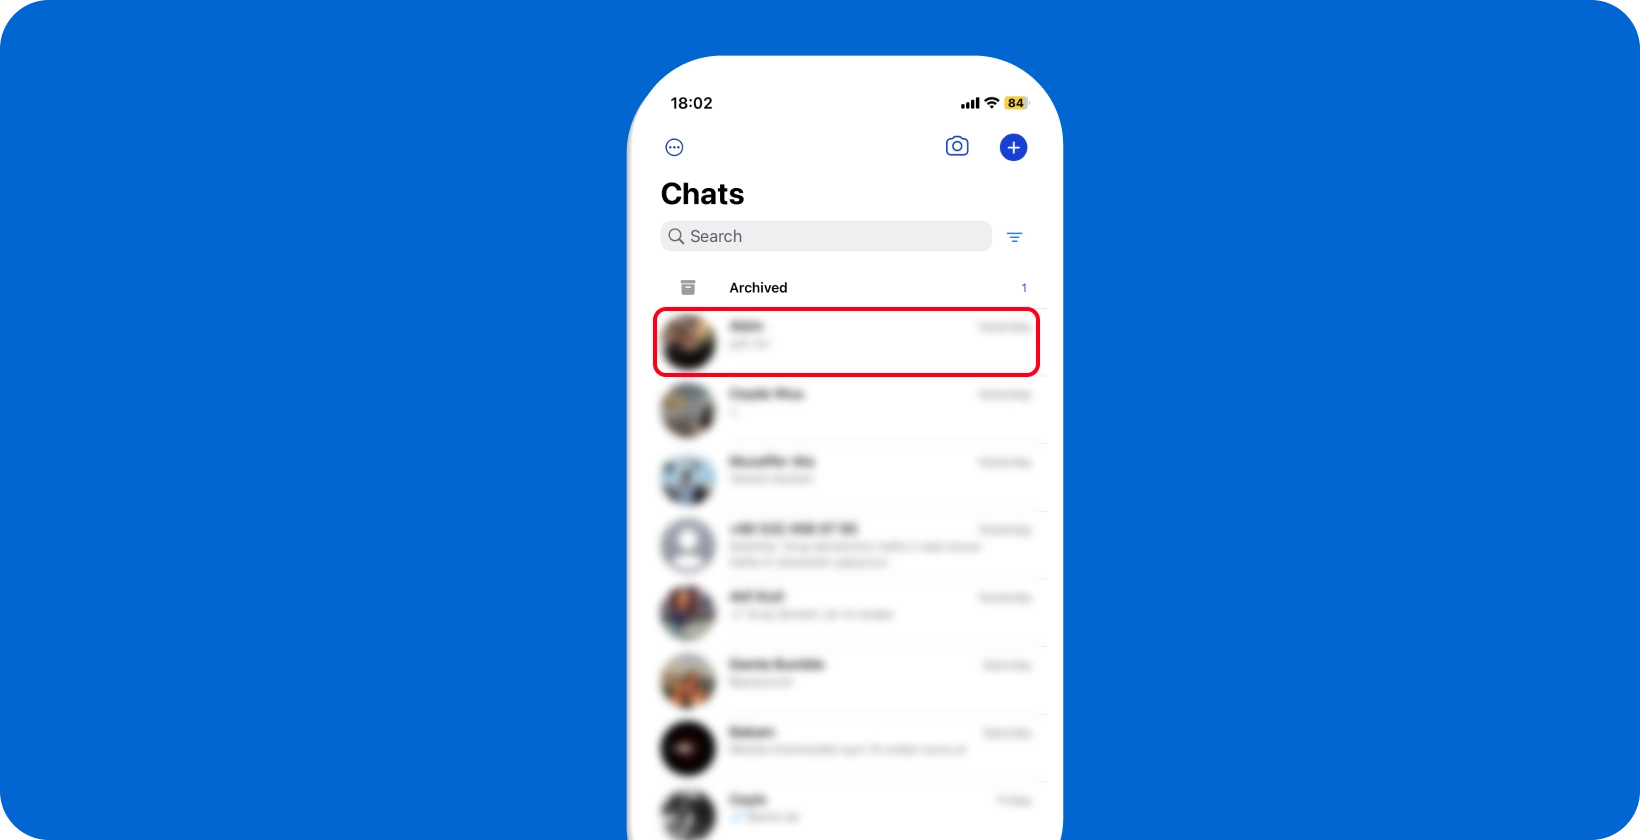 Ekran czatu WhatsApp pokazujący przegląd rozmów, gotowy do interakcji użytkownika i dyktowania.